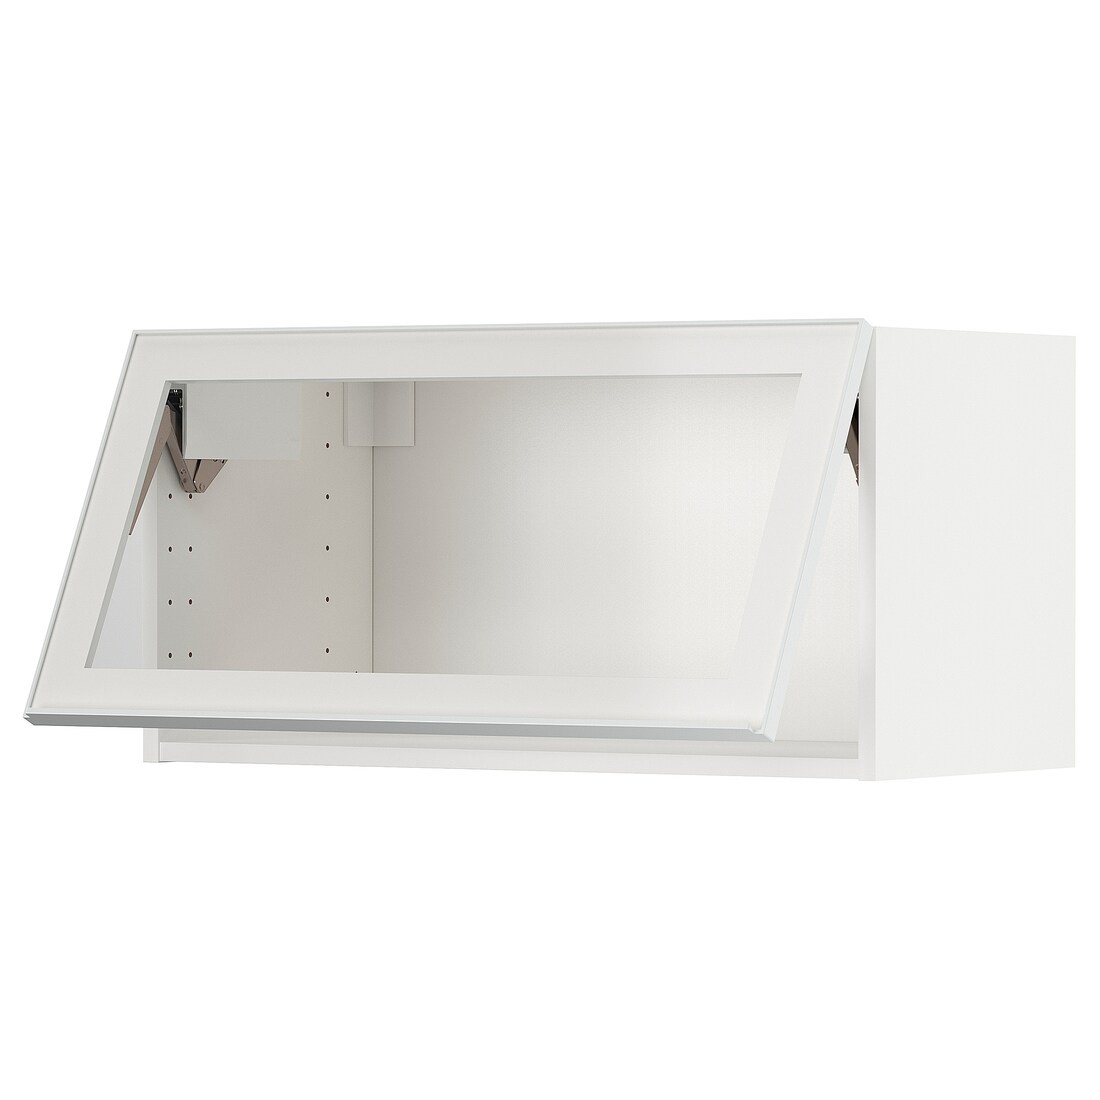 IKEA METOD МЕТОД Навесной горизонтальный шкаф, белый / Hesta белое прозрачное стекло, 80x40 см 19490584 194.905.84